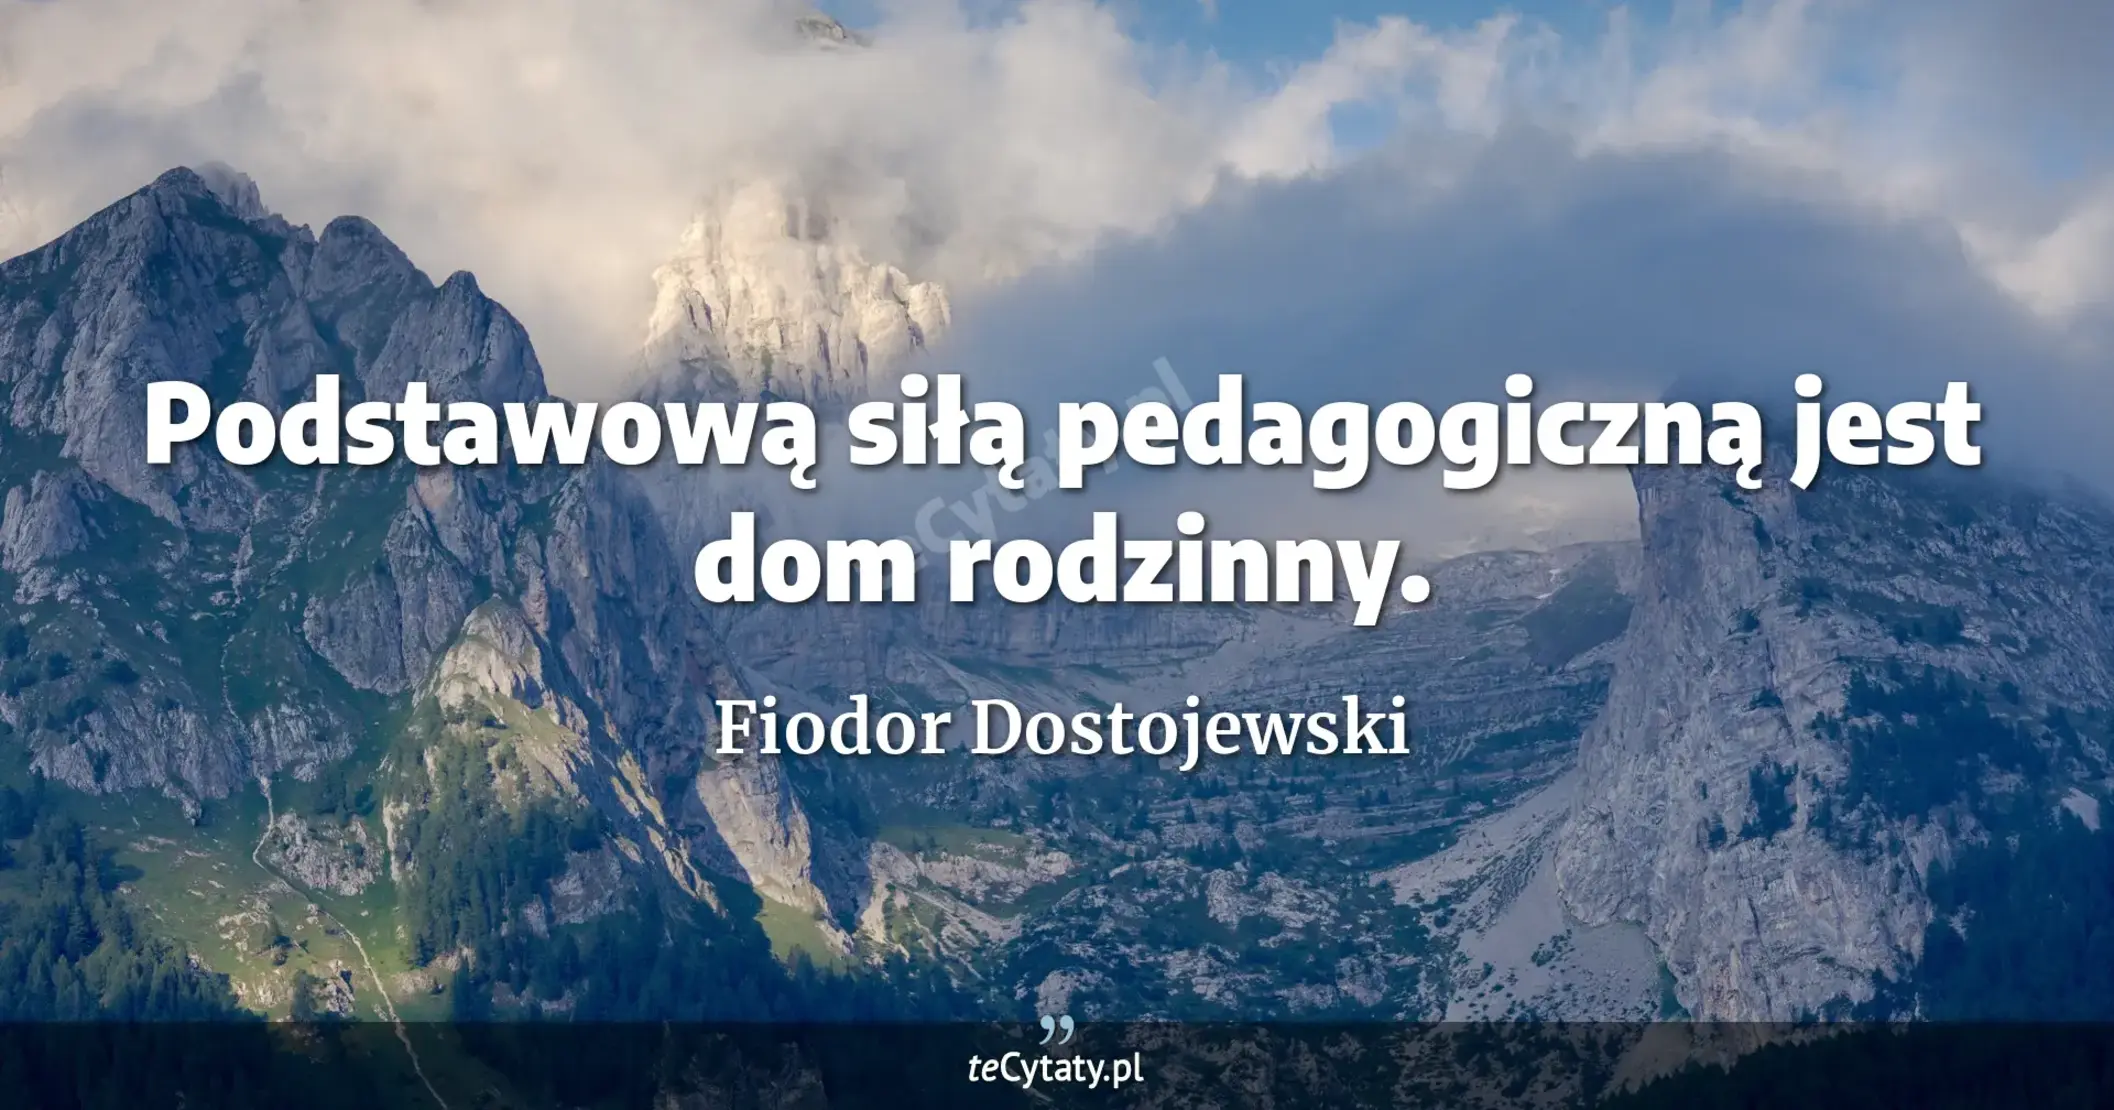 Podstawową siłą pedagogiczną jest dom rodzinny. - Fiodor Dostojewski